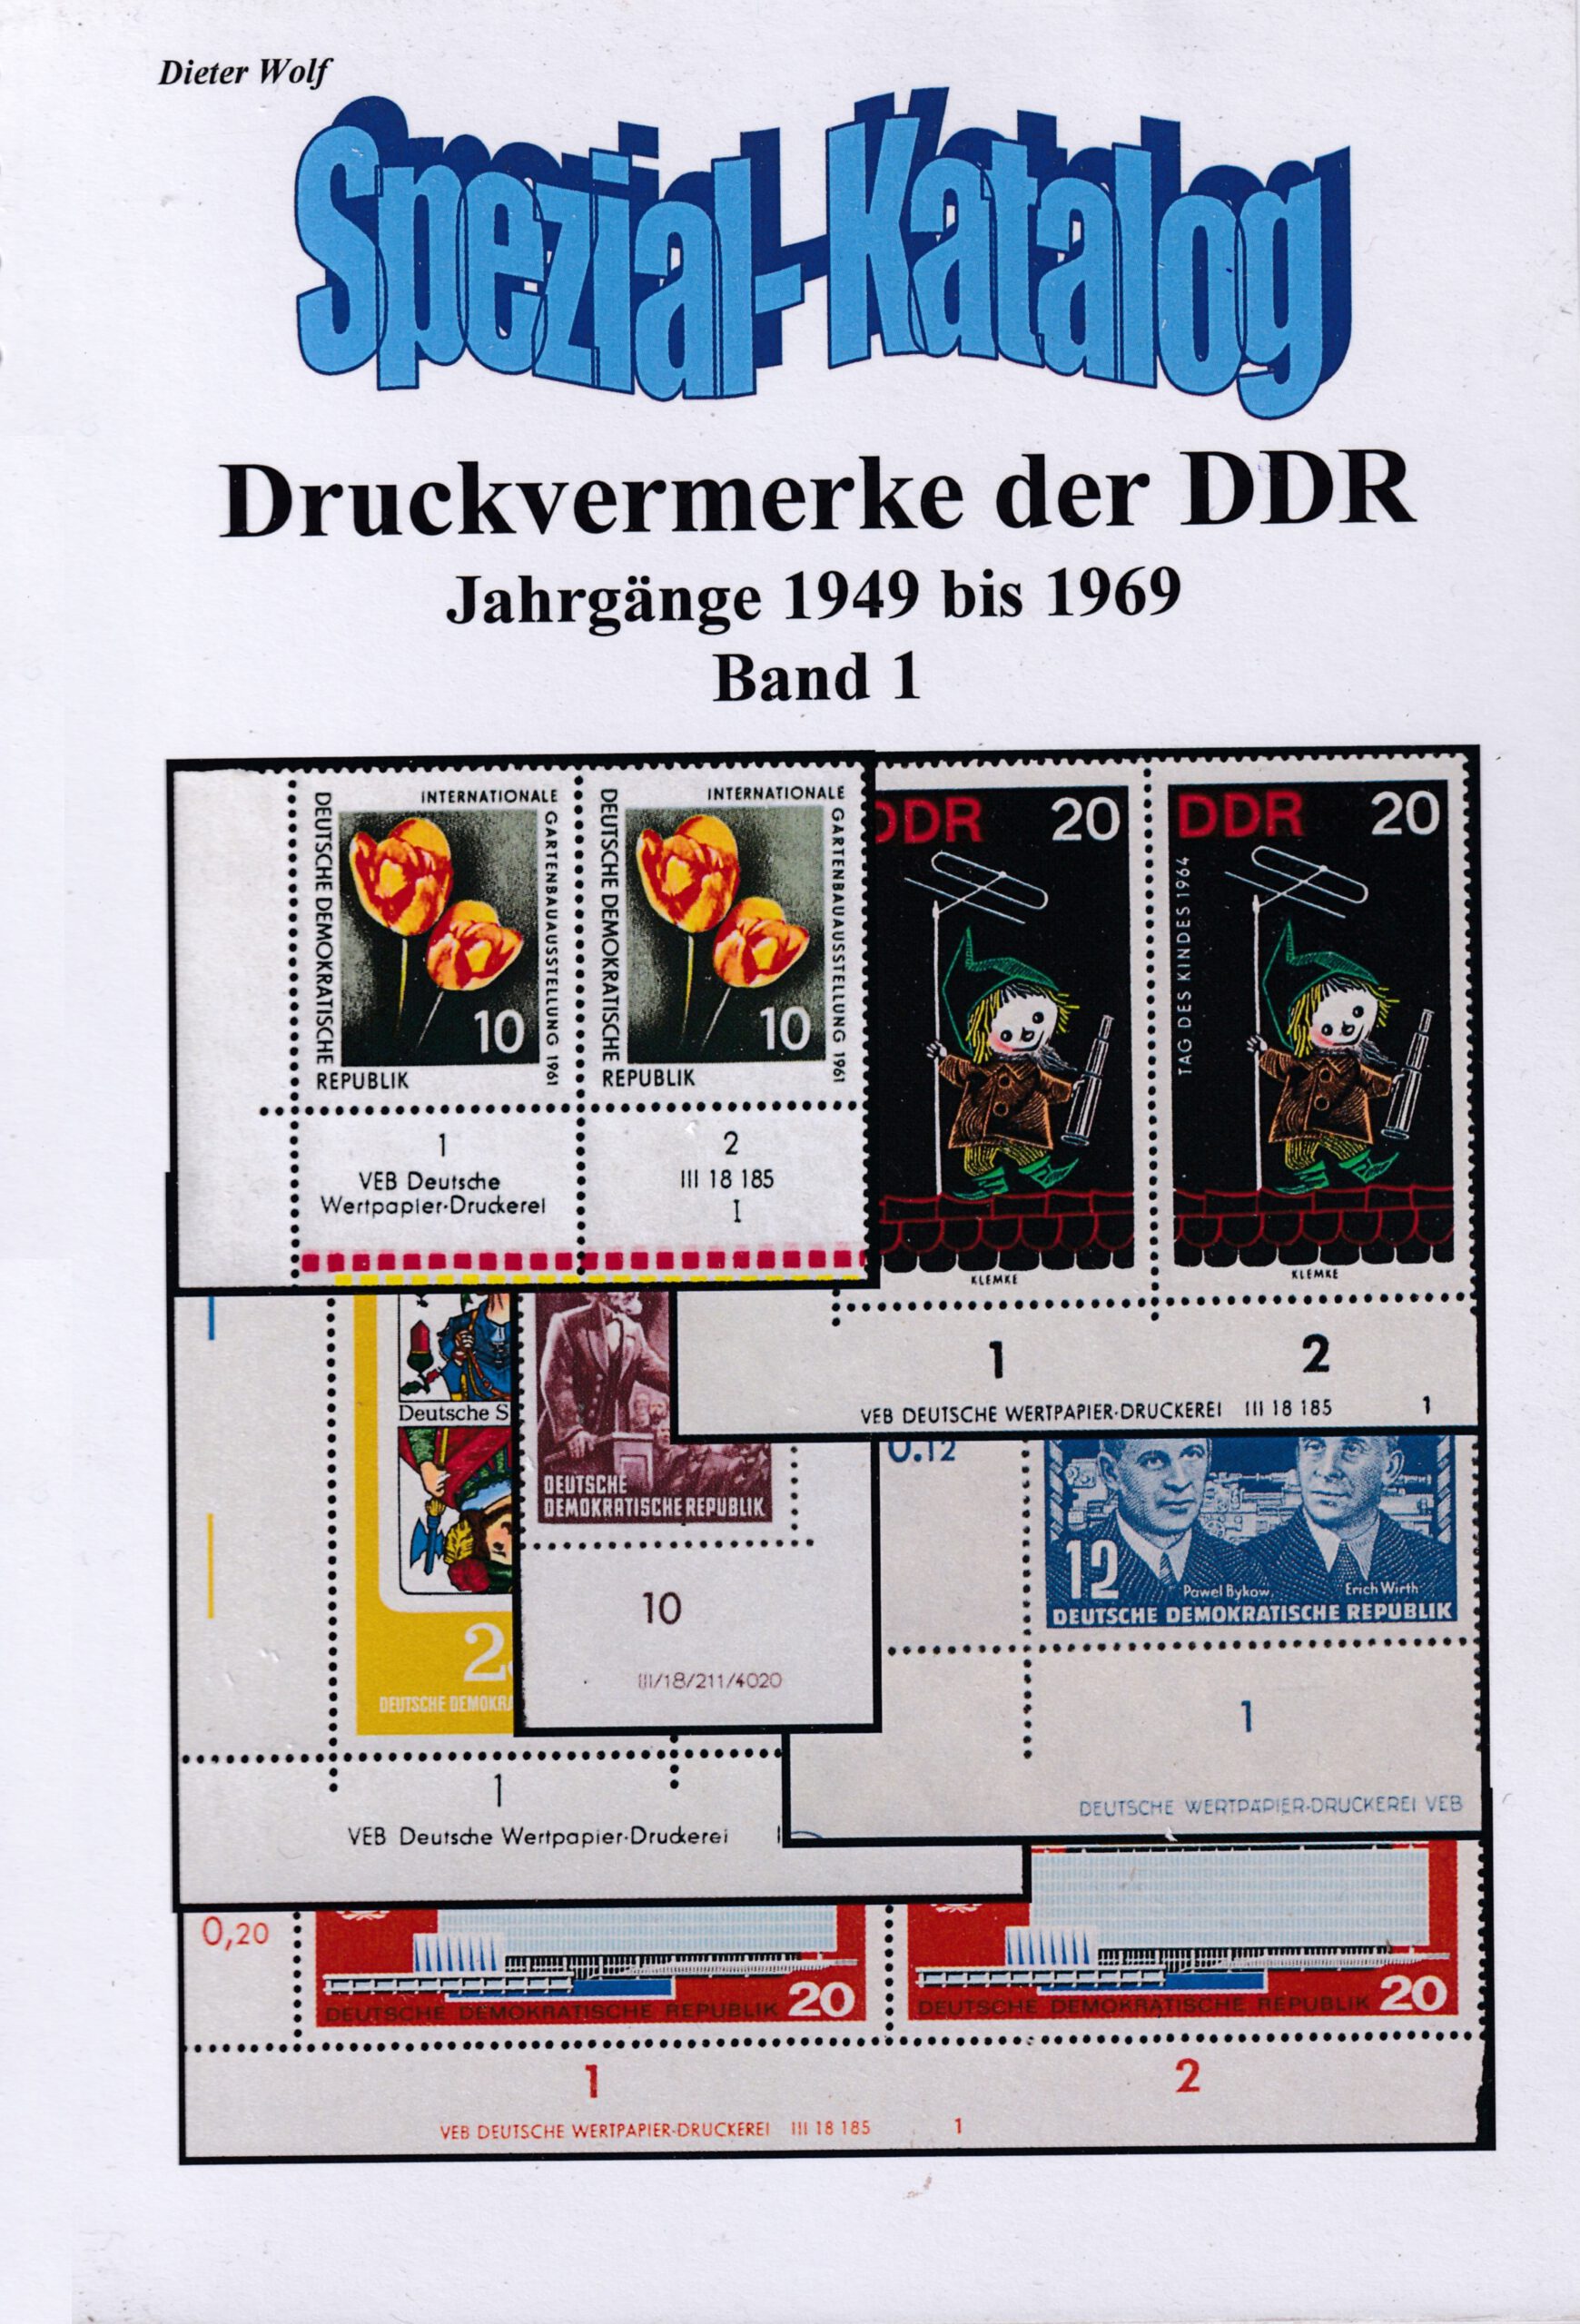 DDR Briefmarken Durckvermerke DV